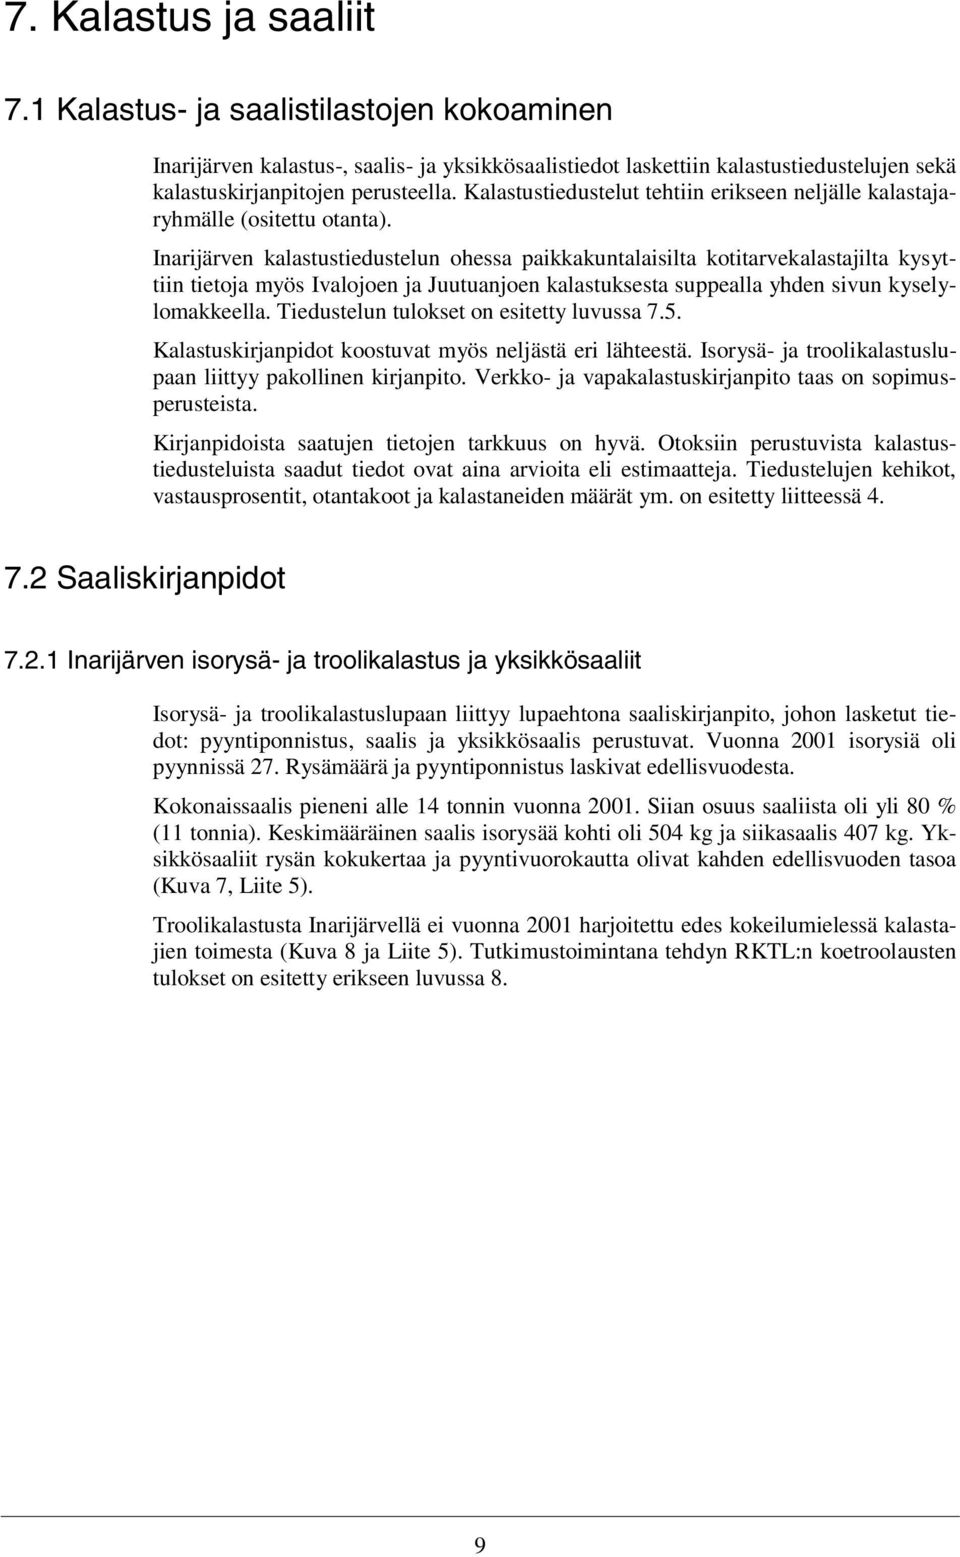 Inarijärven kalastustiedustelun ohessa paikkakuntalaisilta kotitarvekalastajilta kysyttiin tietoja myös Ivalojoen ja Juutuanjoen kalastuksesta suppealla yhden sivun kyselylomakkeella.